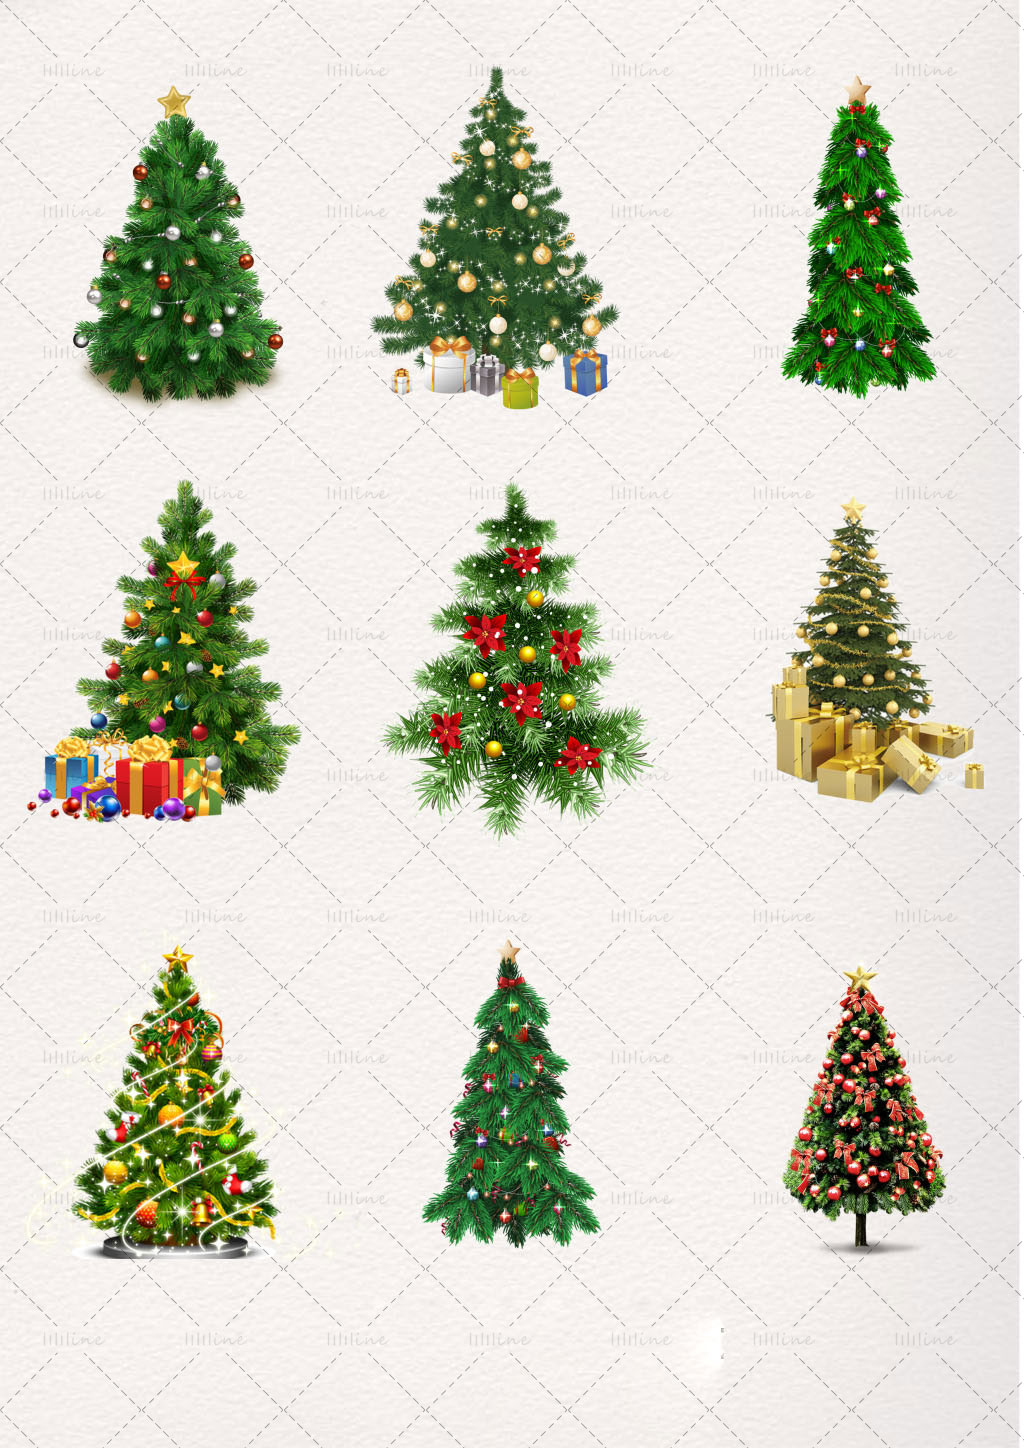 Christmas Tree psd